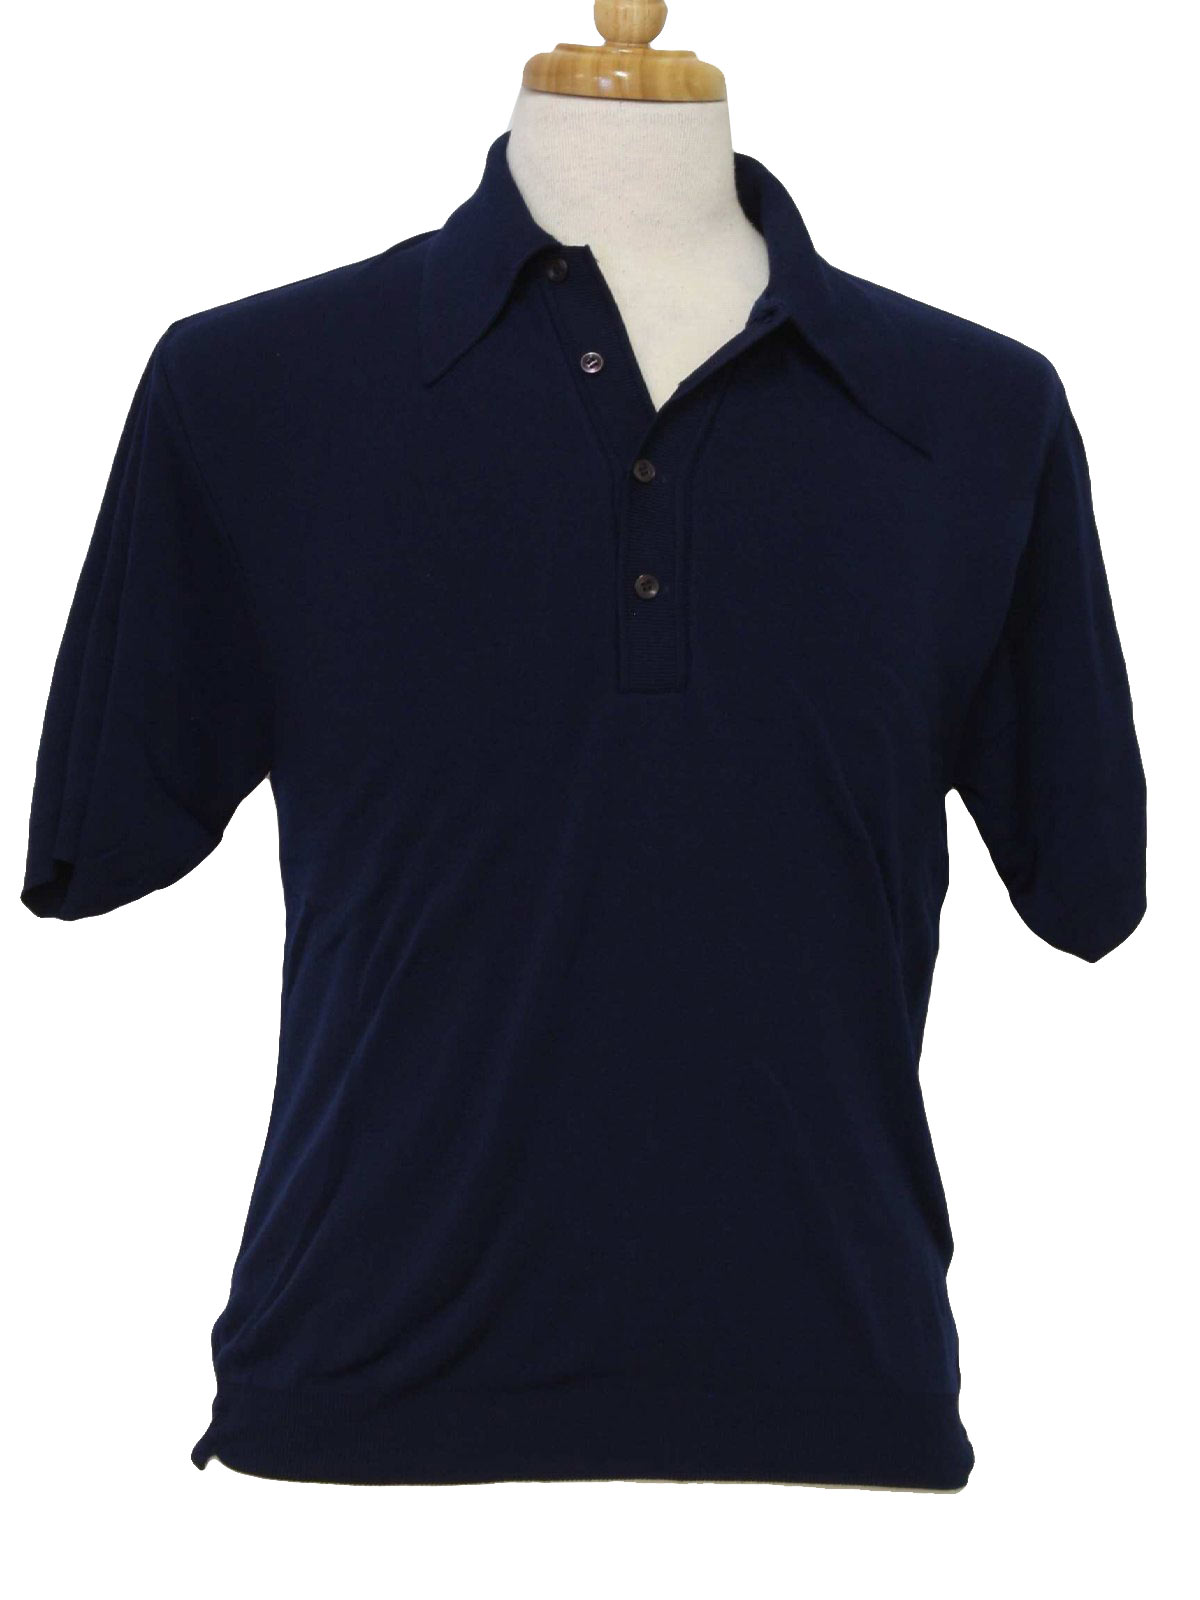 Retro 70s Shirt (JC Penney) : 70s -JC Penney- Mens dark navy blue nylon ...